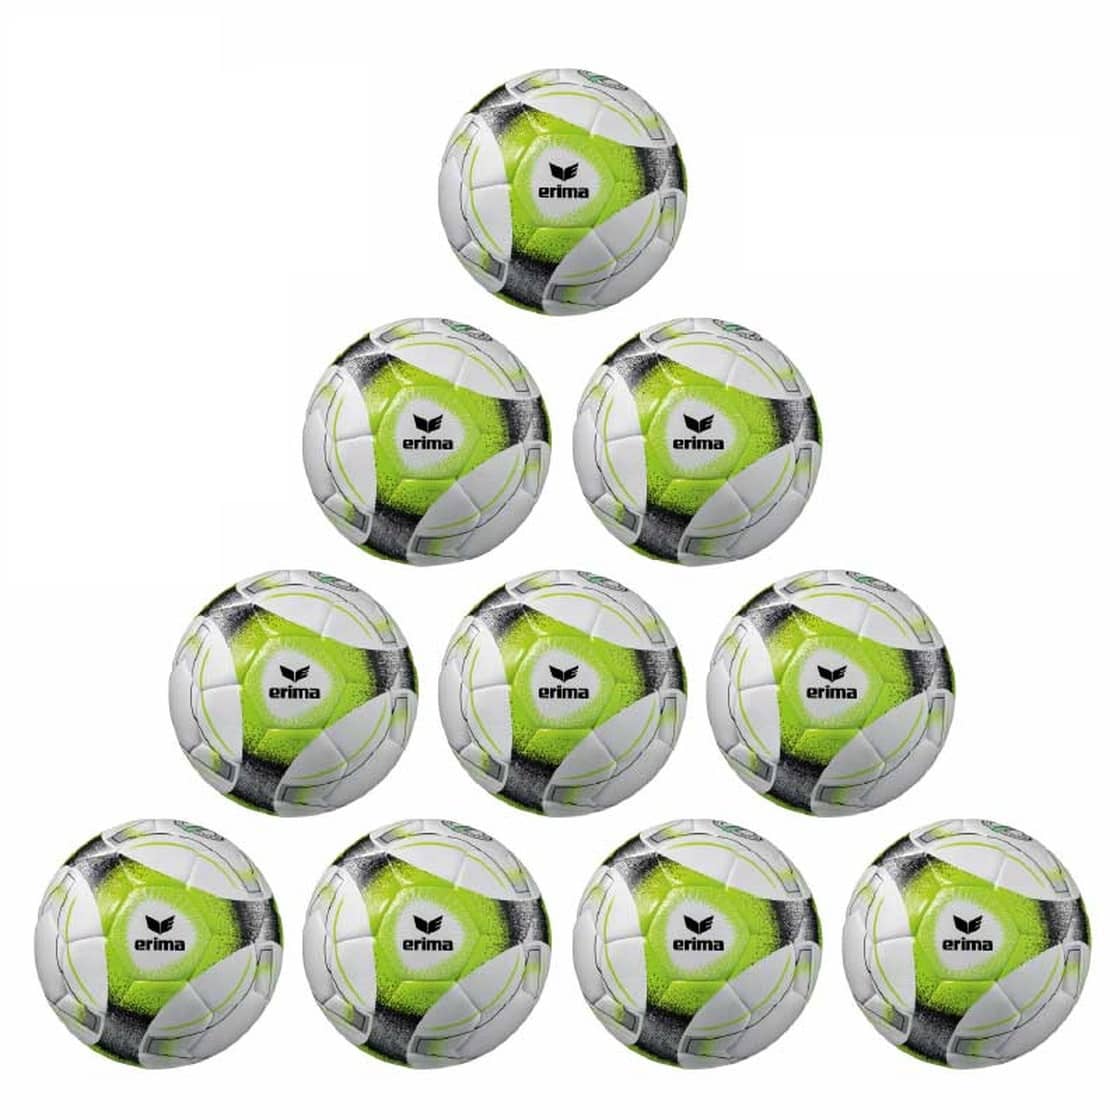 Erima Ballpaket 10x Hybrid Trainingsball Lite 350g grün inkl. Ballsack